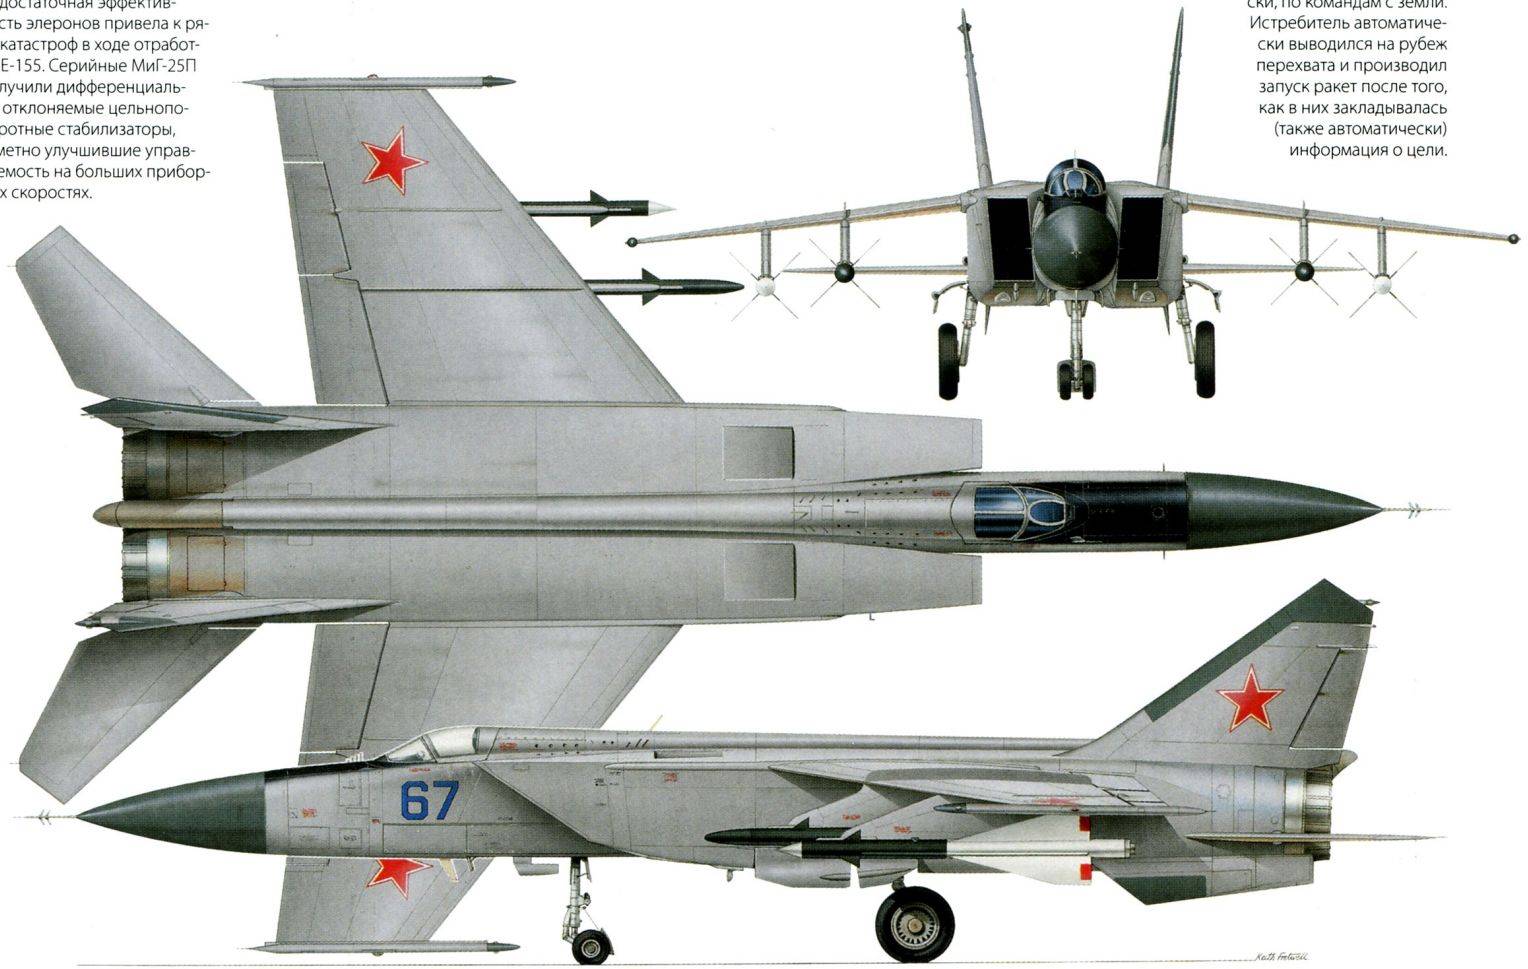 Высокоскоростной перехватчик миг 25 - авиация россии высокоскоростной перехватчик миг 25 - авиация россии